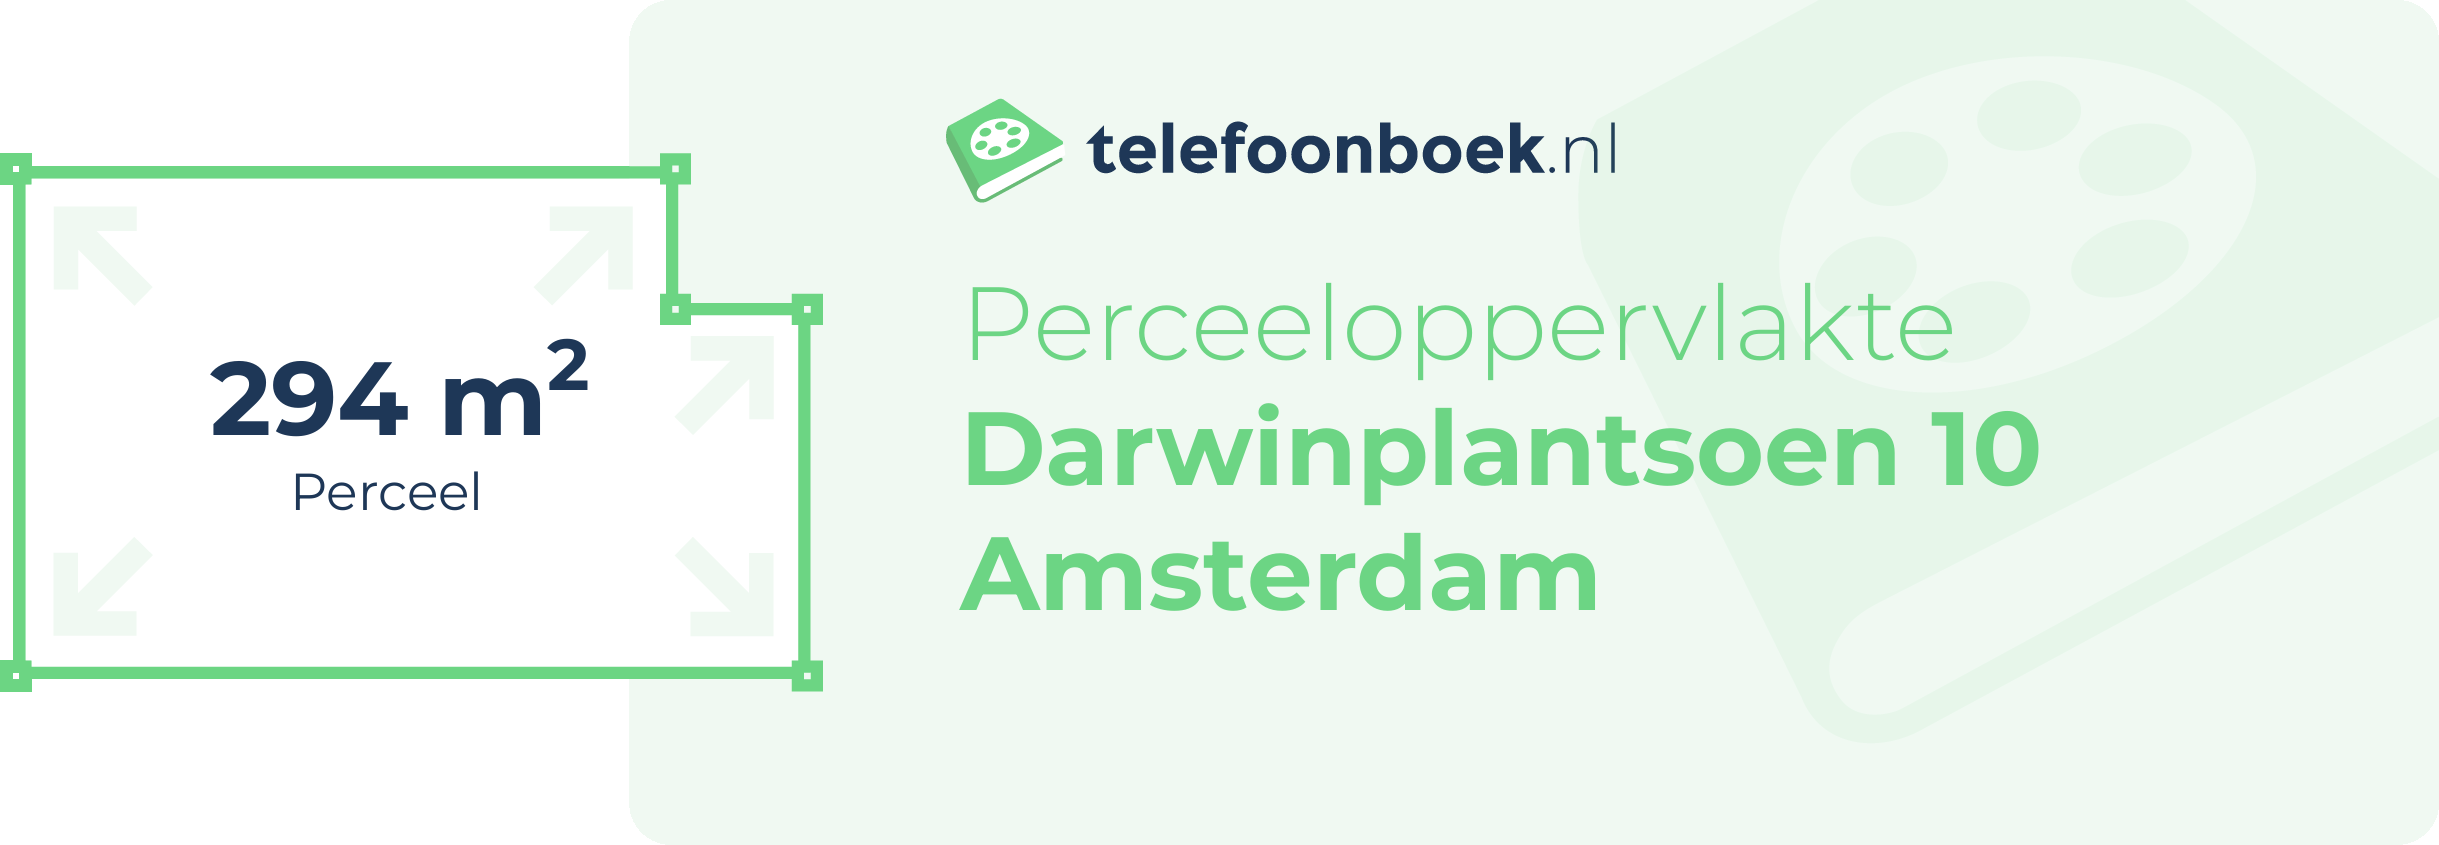 Perceeloppervlakte Darwinplantsoen 10 Amsterdam